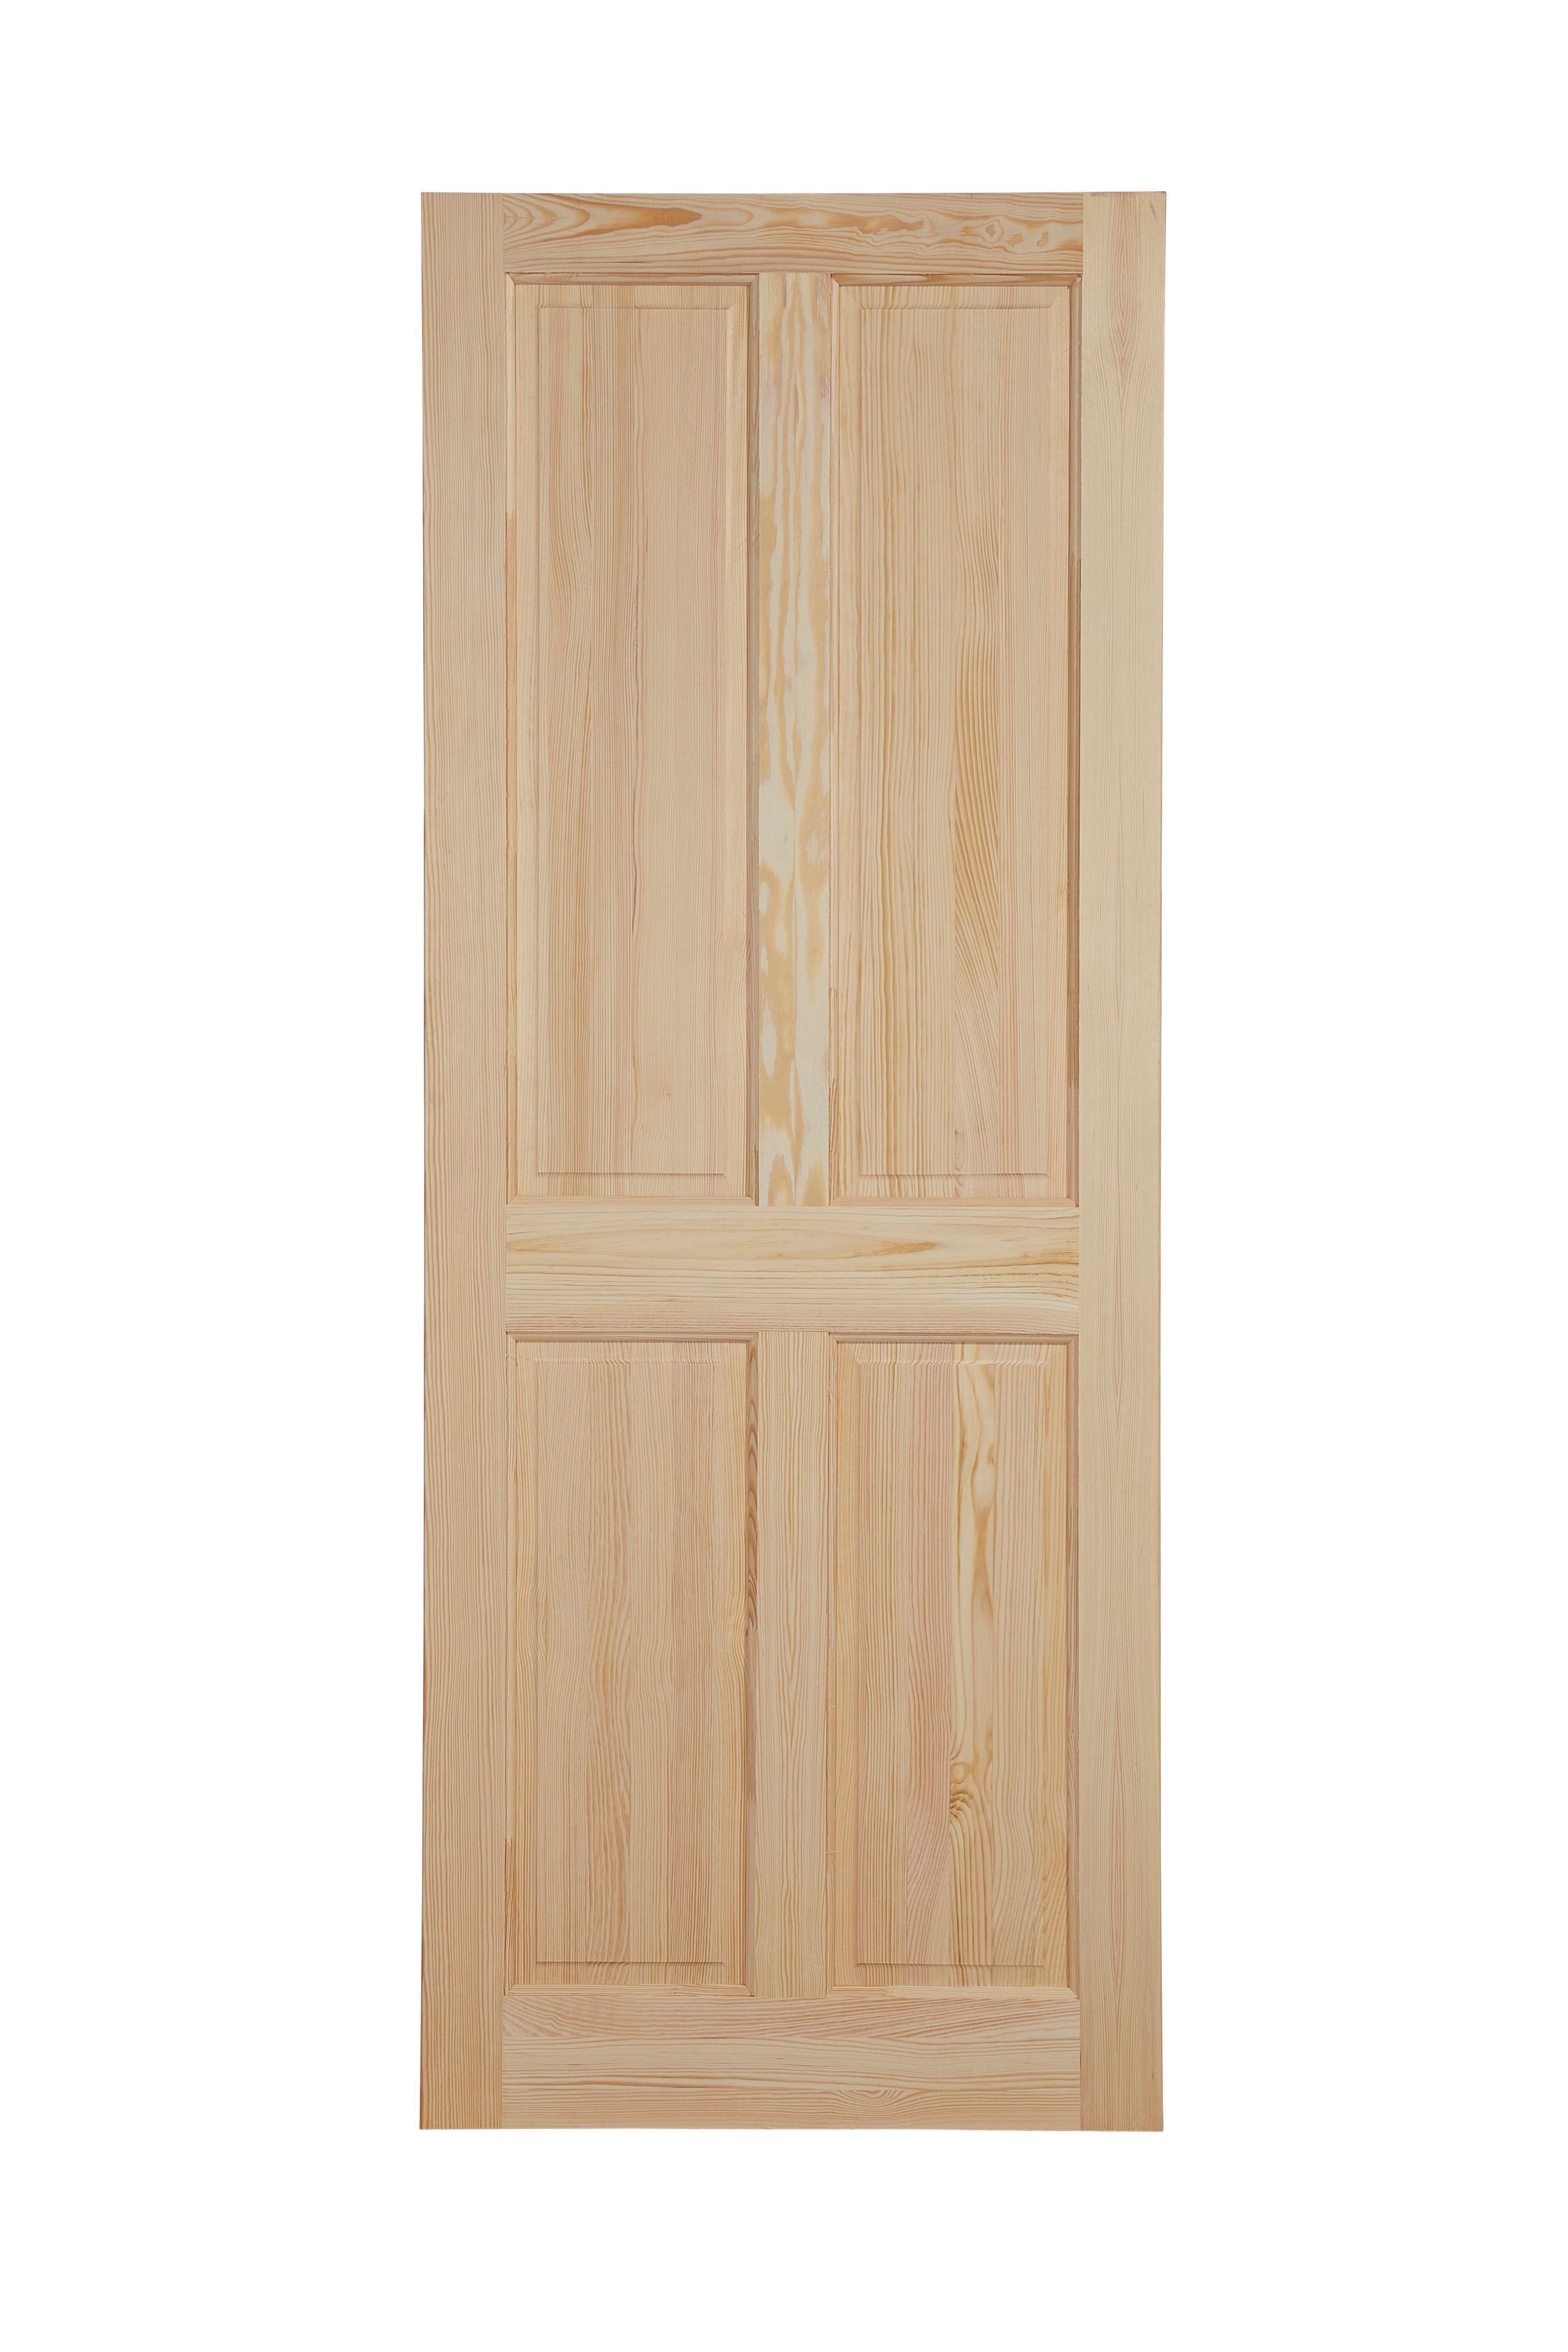 4 panel Unglazed Victorian Pine veneer Internal Clear pine Door, (H)1981mm (W)610mm (T)35mm